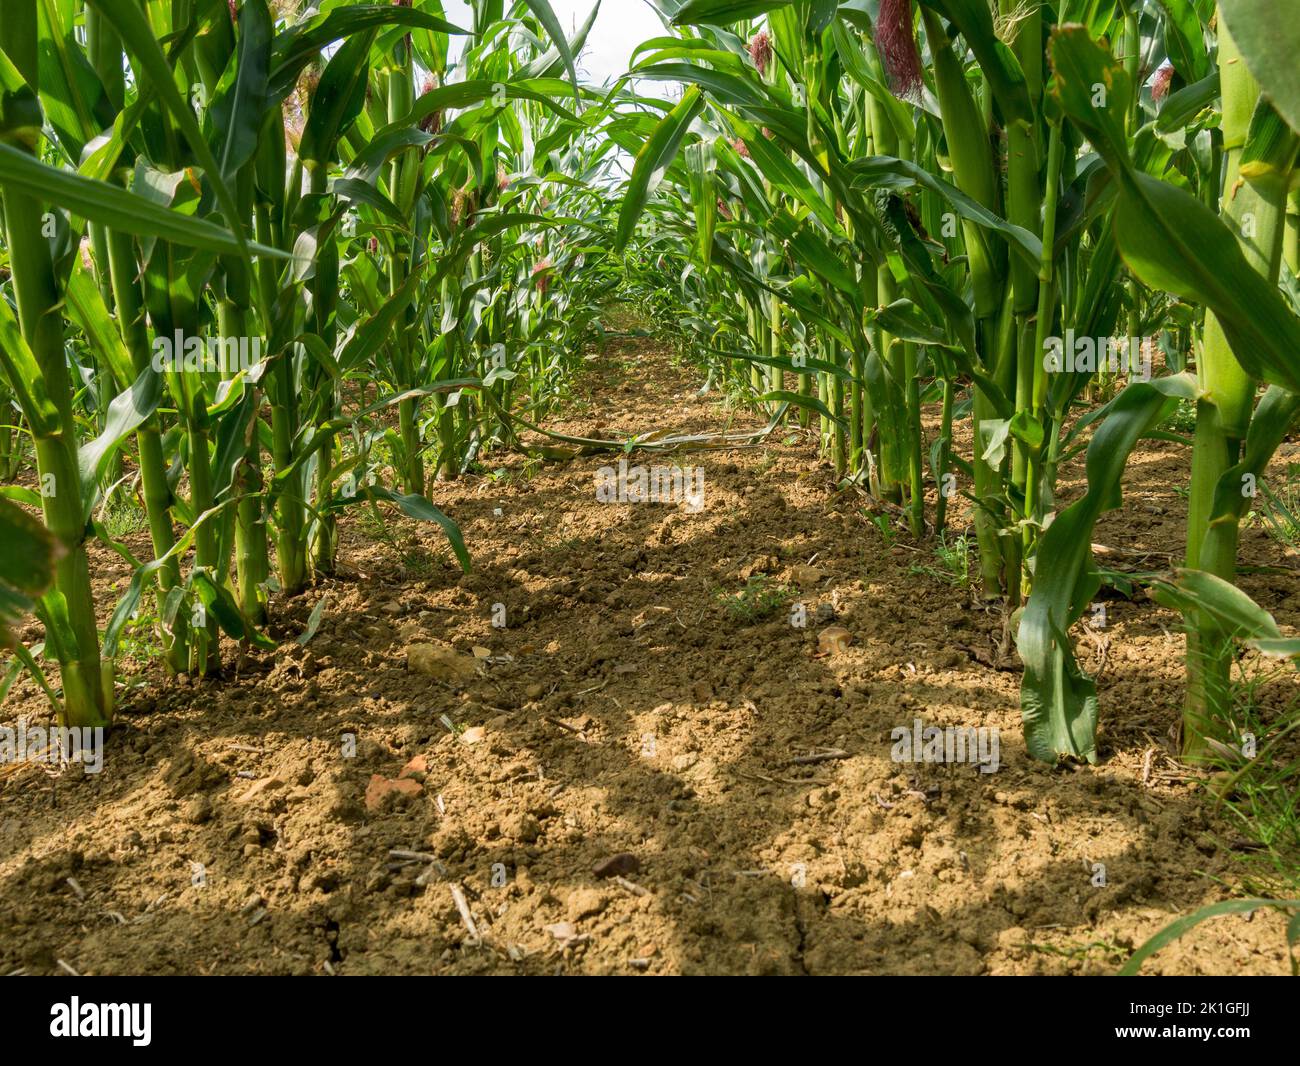 Vue entre les rangées de tiges de maïs doux poussant dans le champ agricole, Leicestershire, Angleterre, Royaume-Uni Banque D'Images